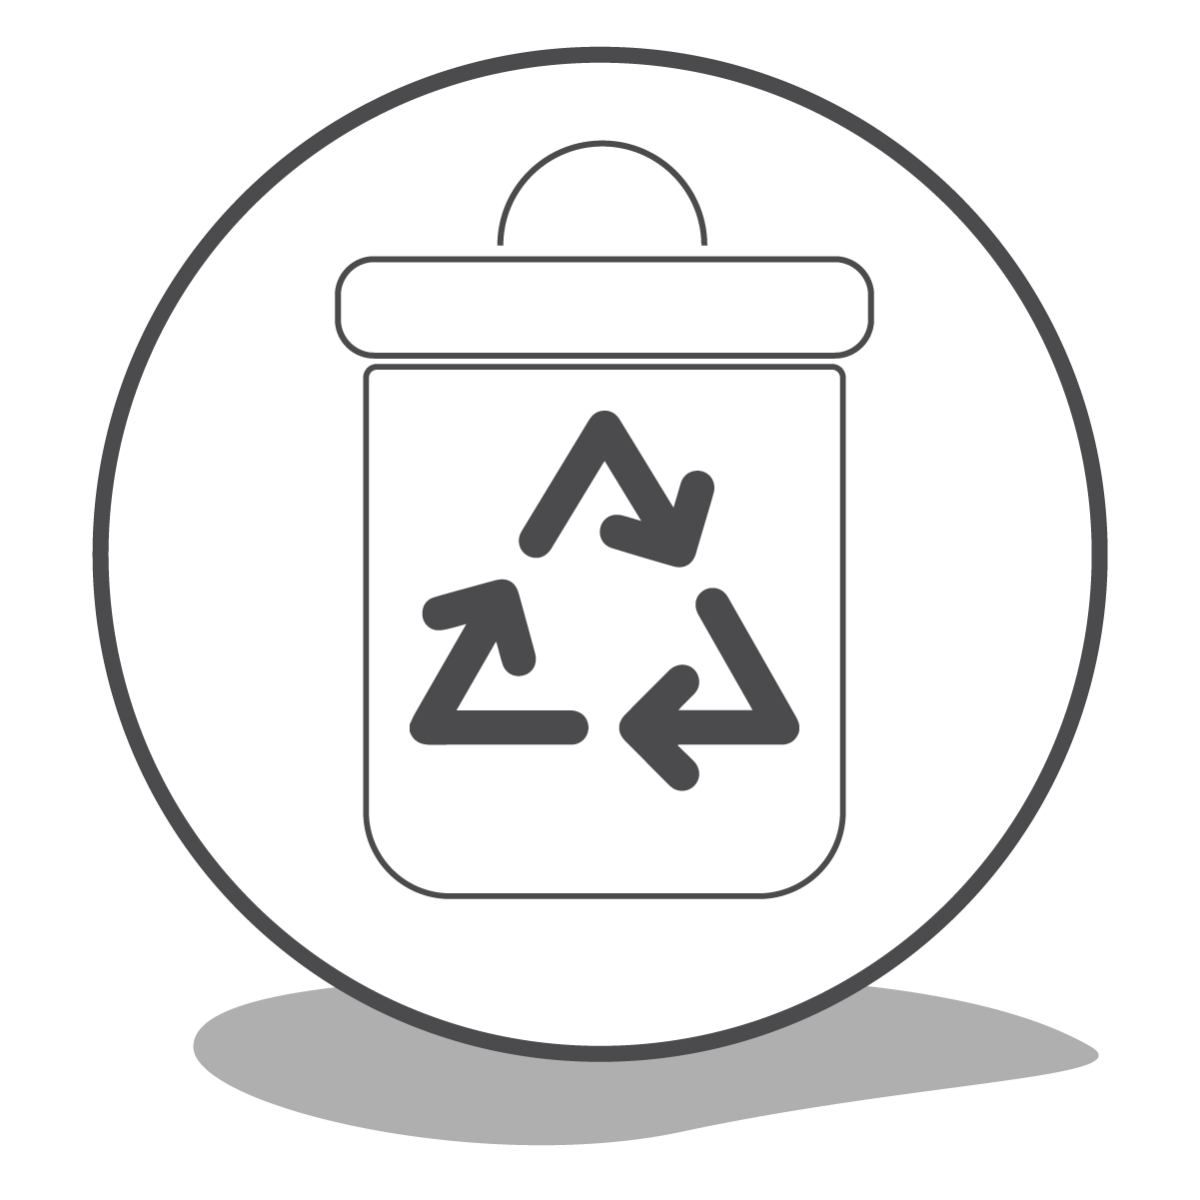 Reparieren statt wegwerfen: Icon für Entsorgen